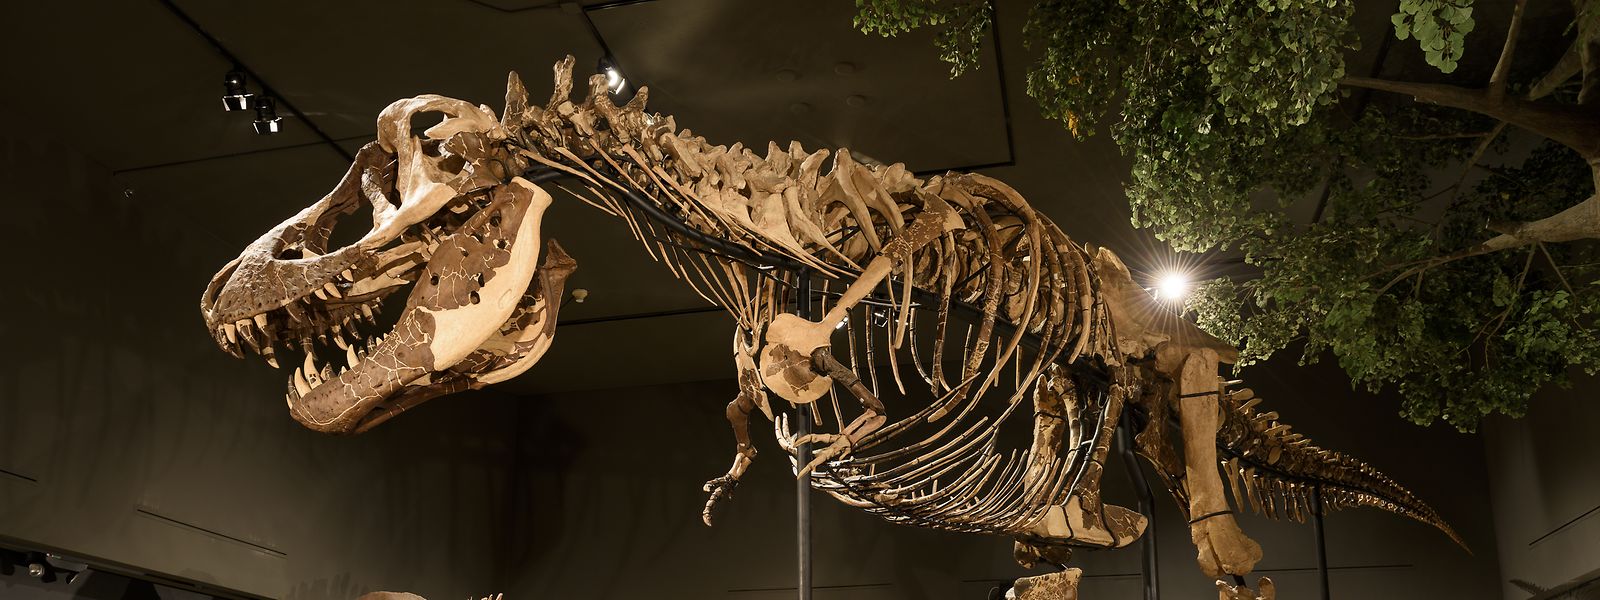 Die Dinosaurier sind vor 65 Millionen Jahren ausgestorben. Das älteste Genom, das entschlüsselt wurde, ist 700.000 Jahre alt. 